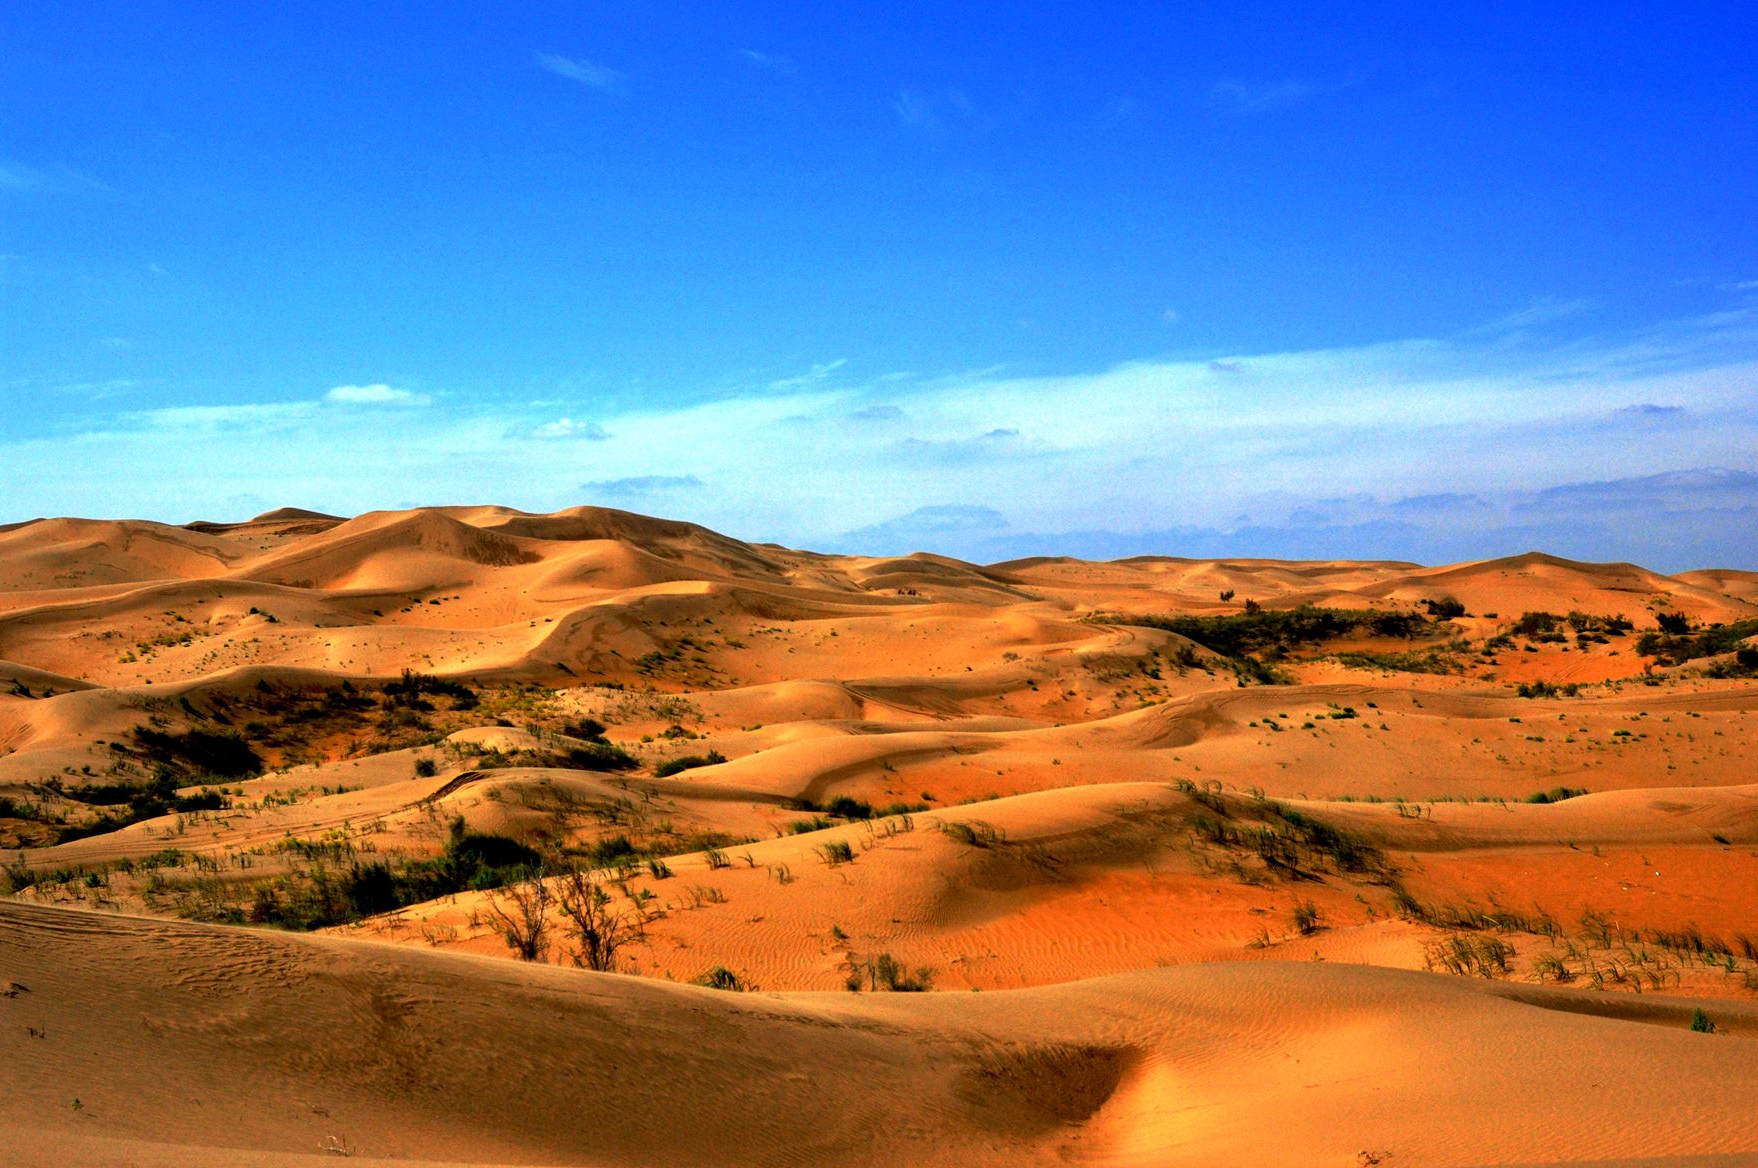 随着库布其沙漠逐渐绿化啊,逐渐的修复,生态环境也得到了好转,这里的